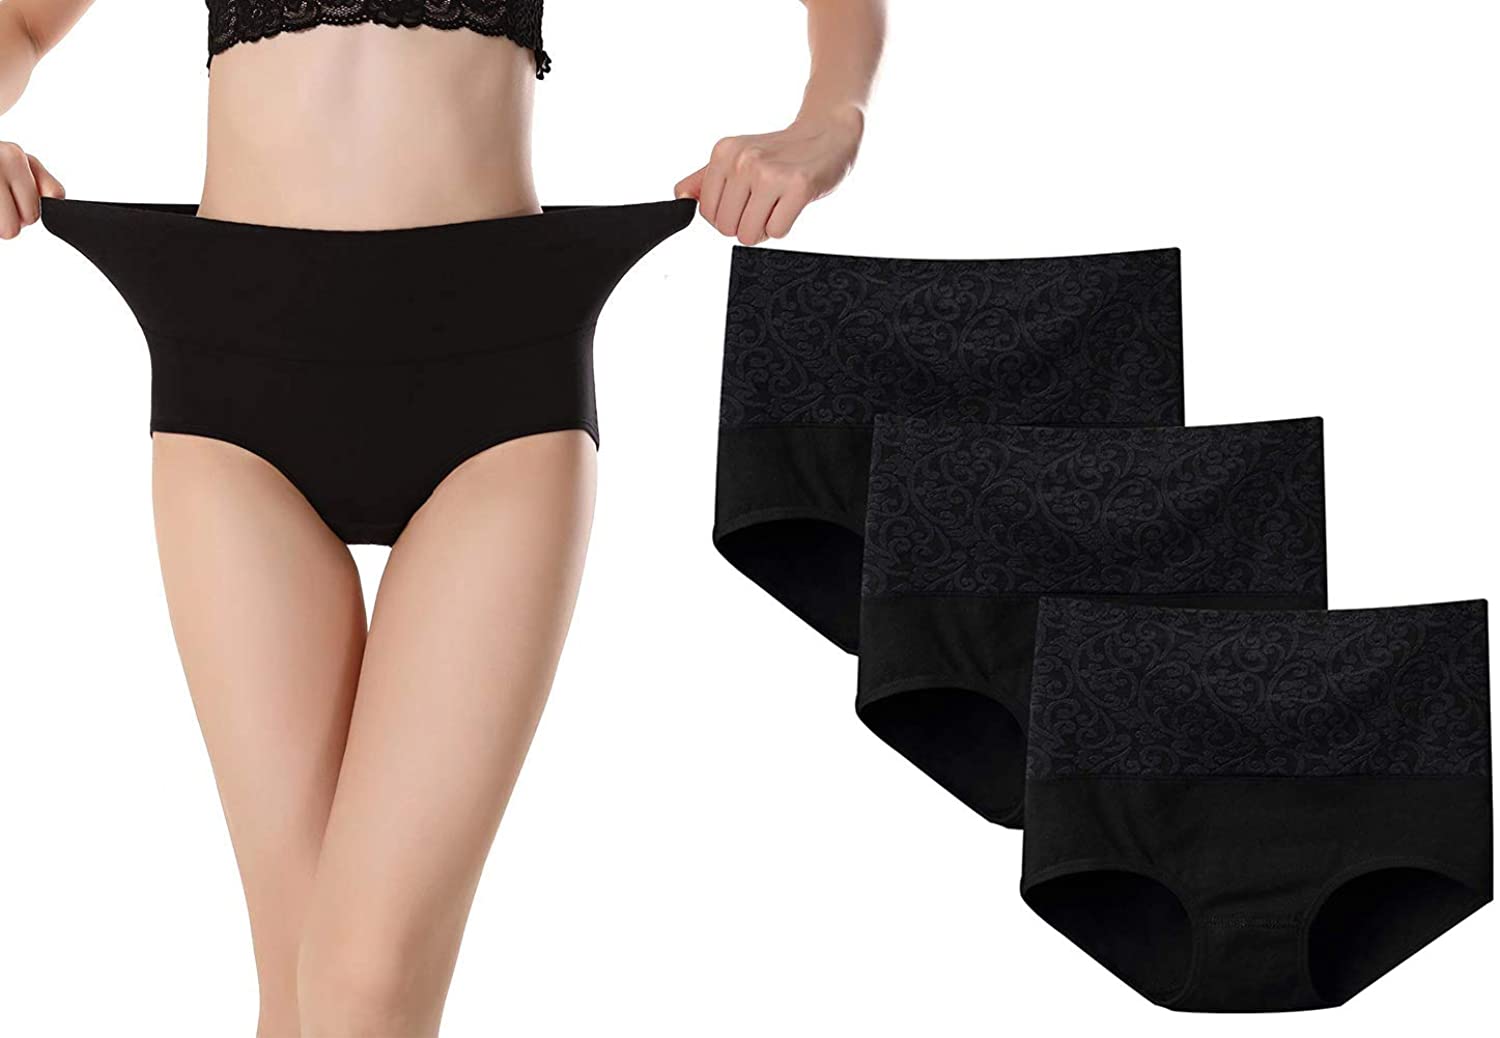 Riozz Women's High Waisted Cotton Underwear Tummy Control Briefs